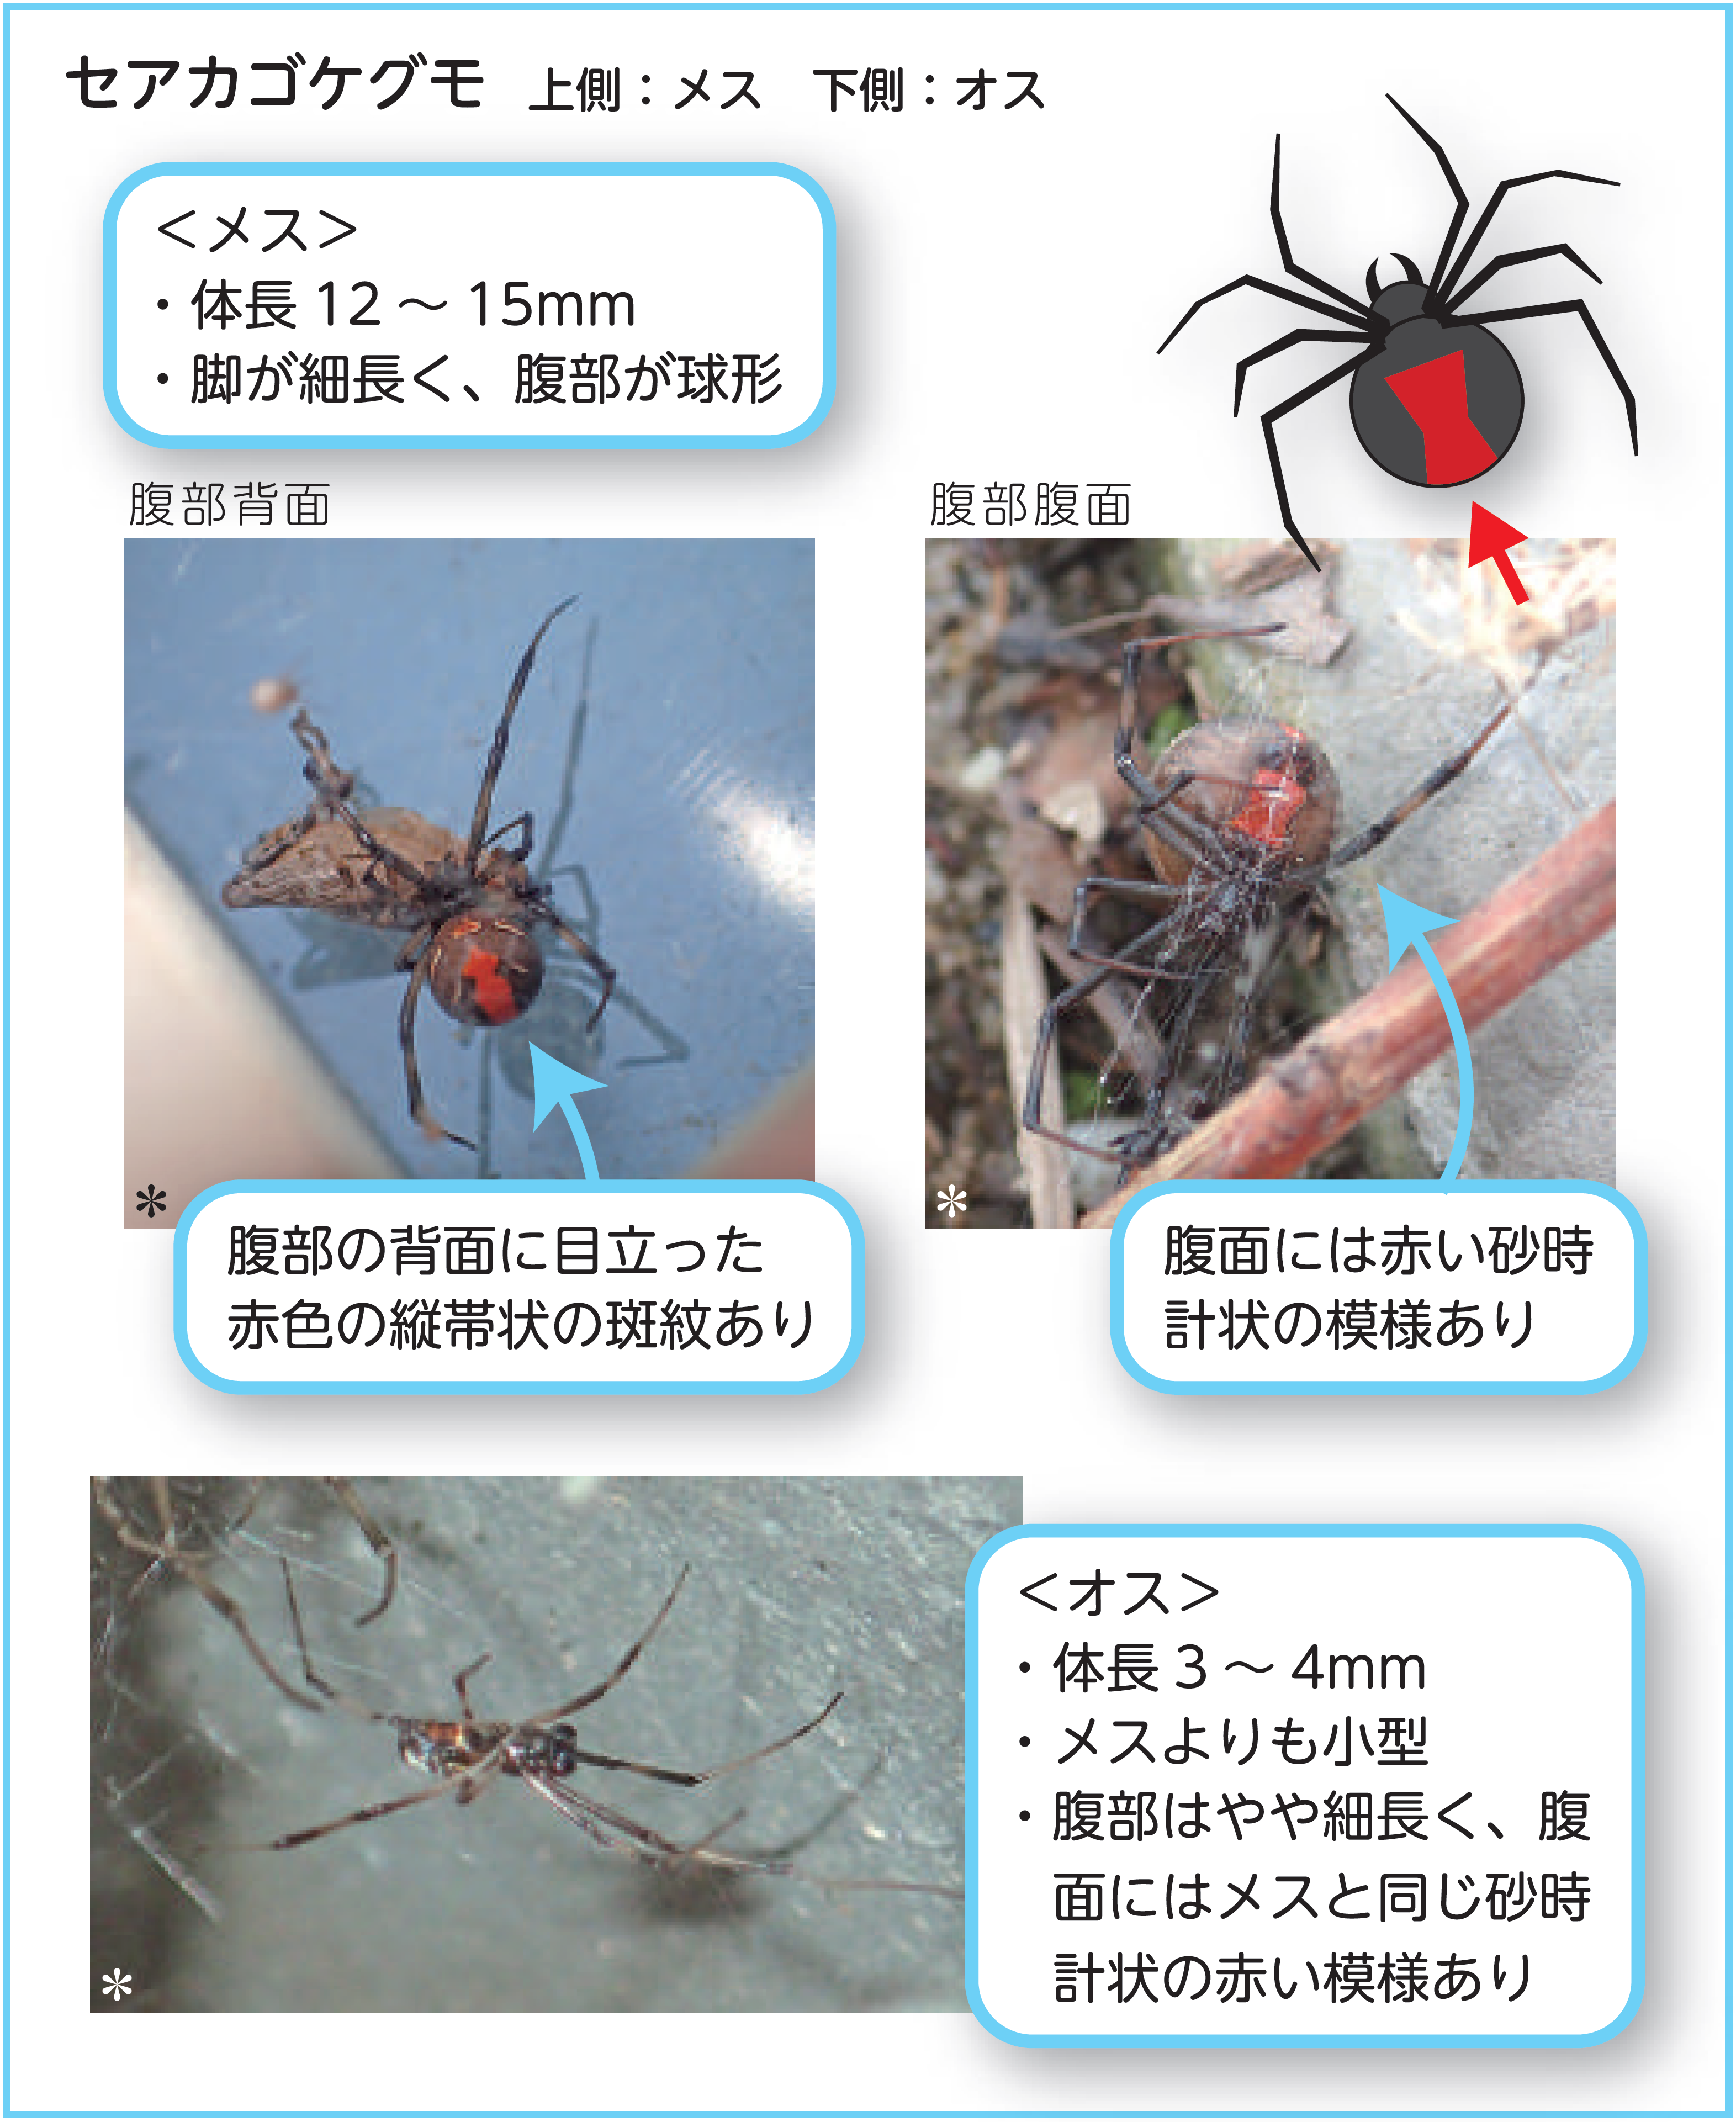 宮田村公式サイト セアカゴケグモを発見したらご注意ください